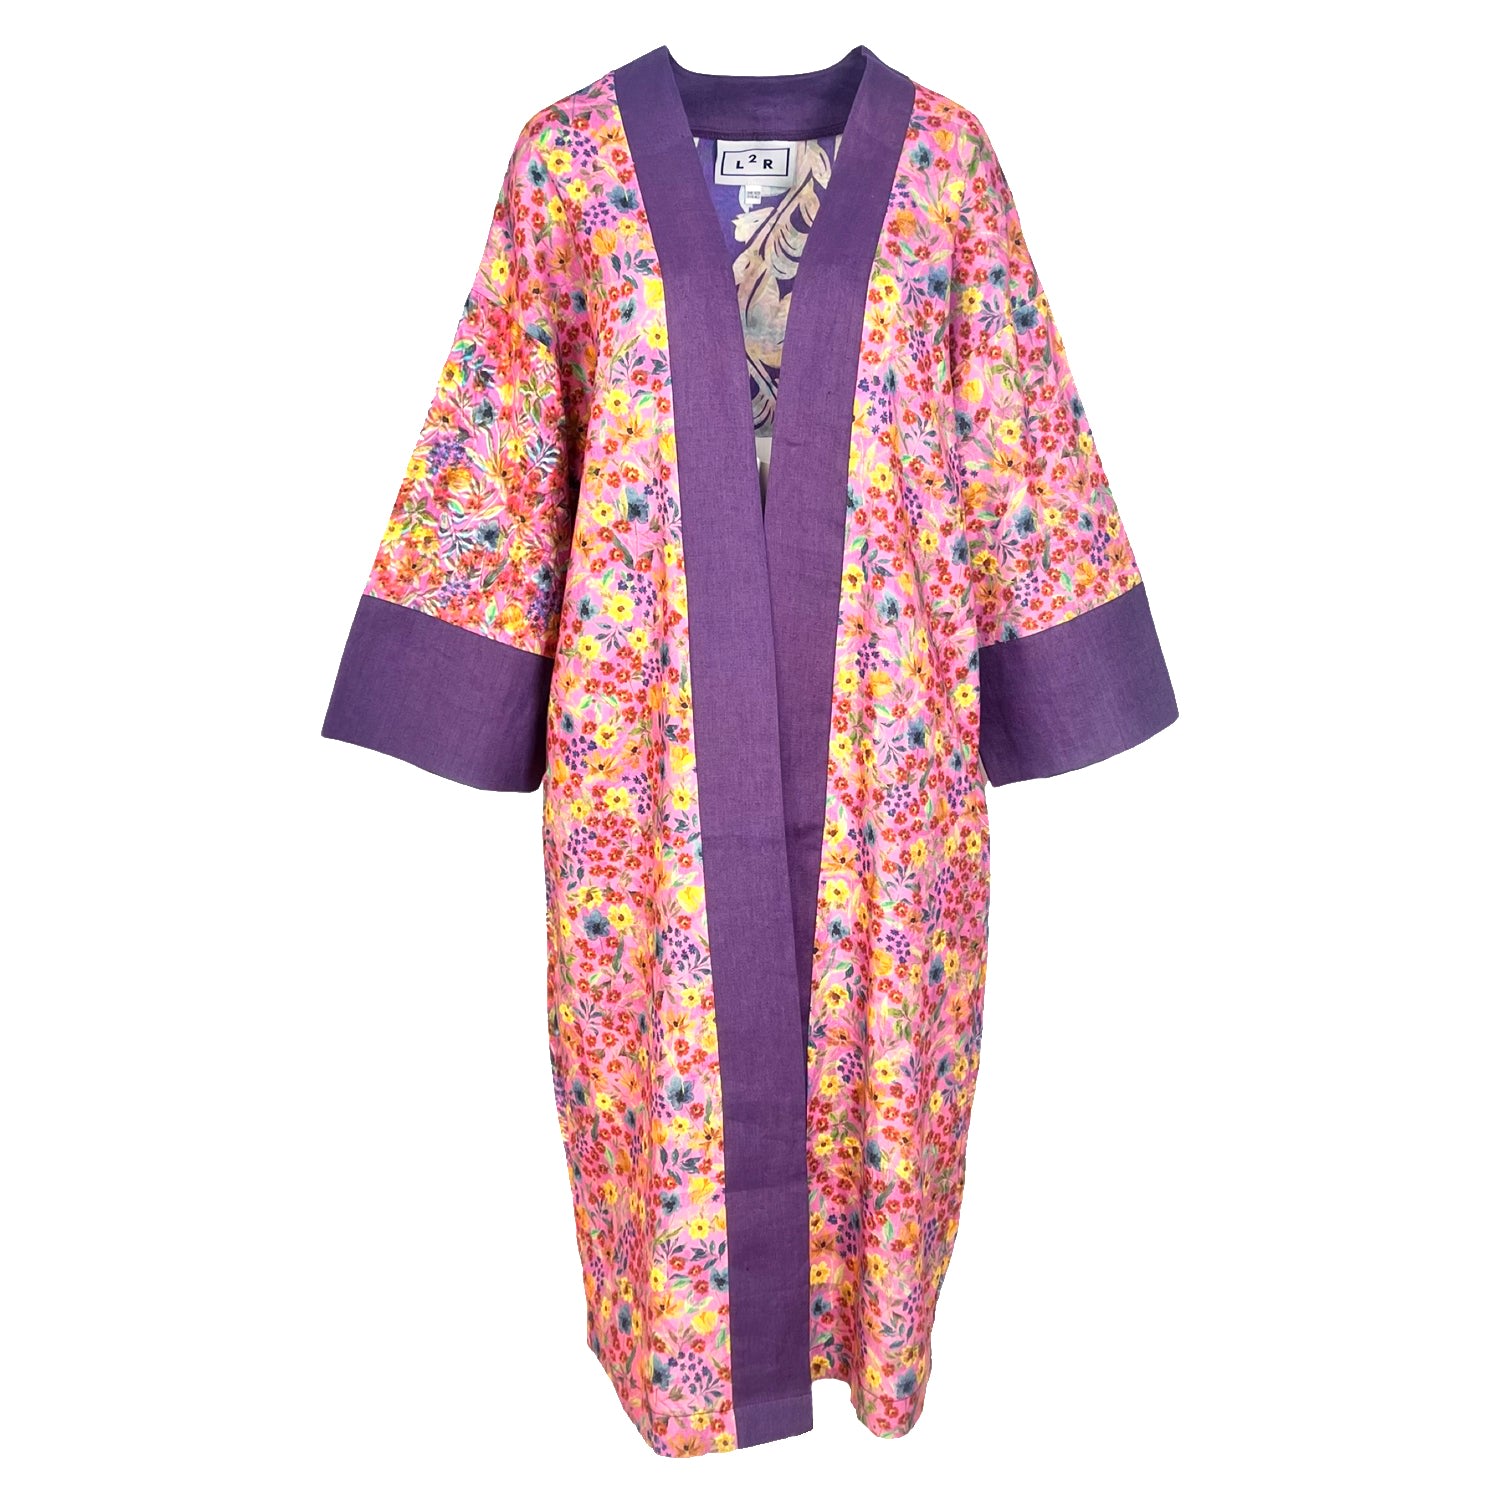 L2r The Label Women's Pink / Purple Reversible Kaftan Kimono - Floral Pink Print